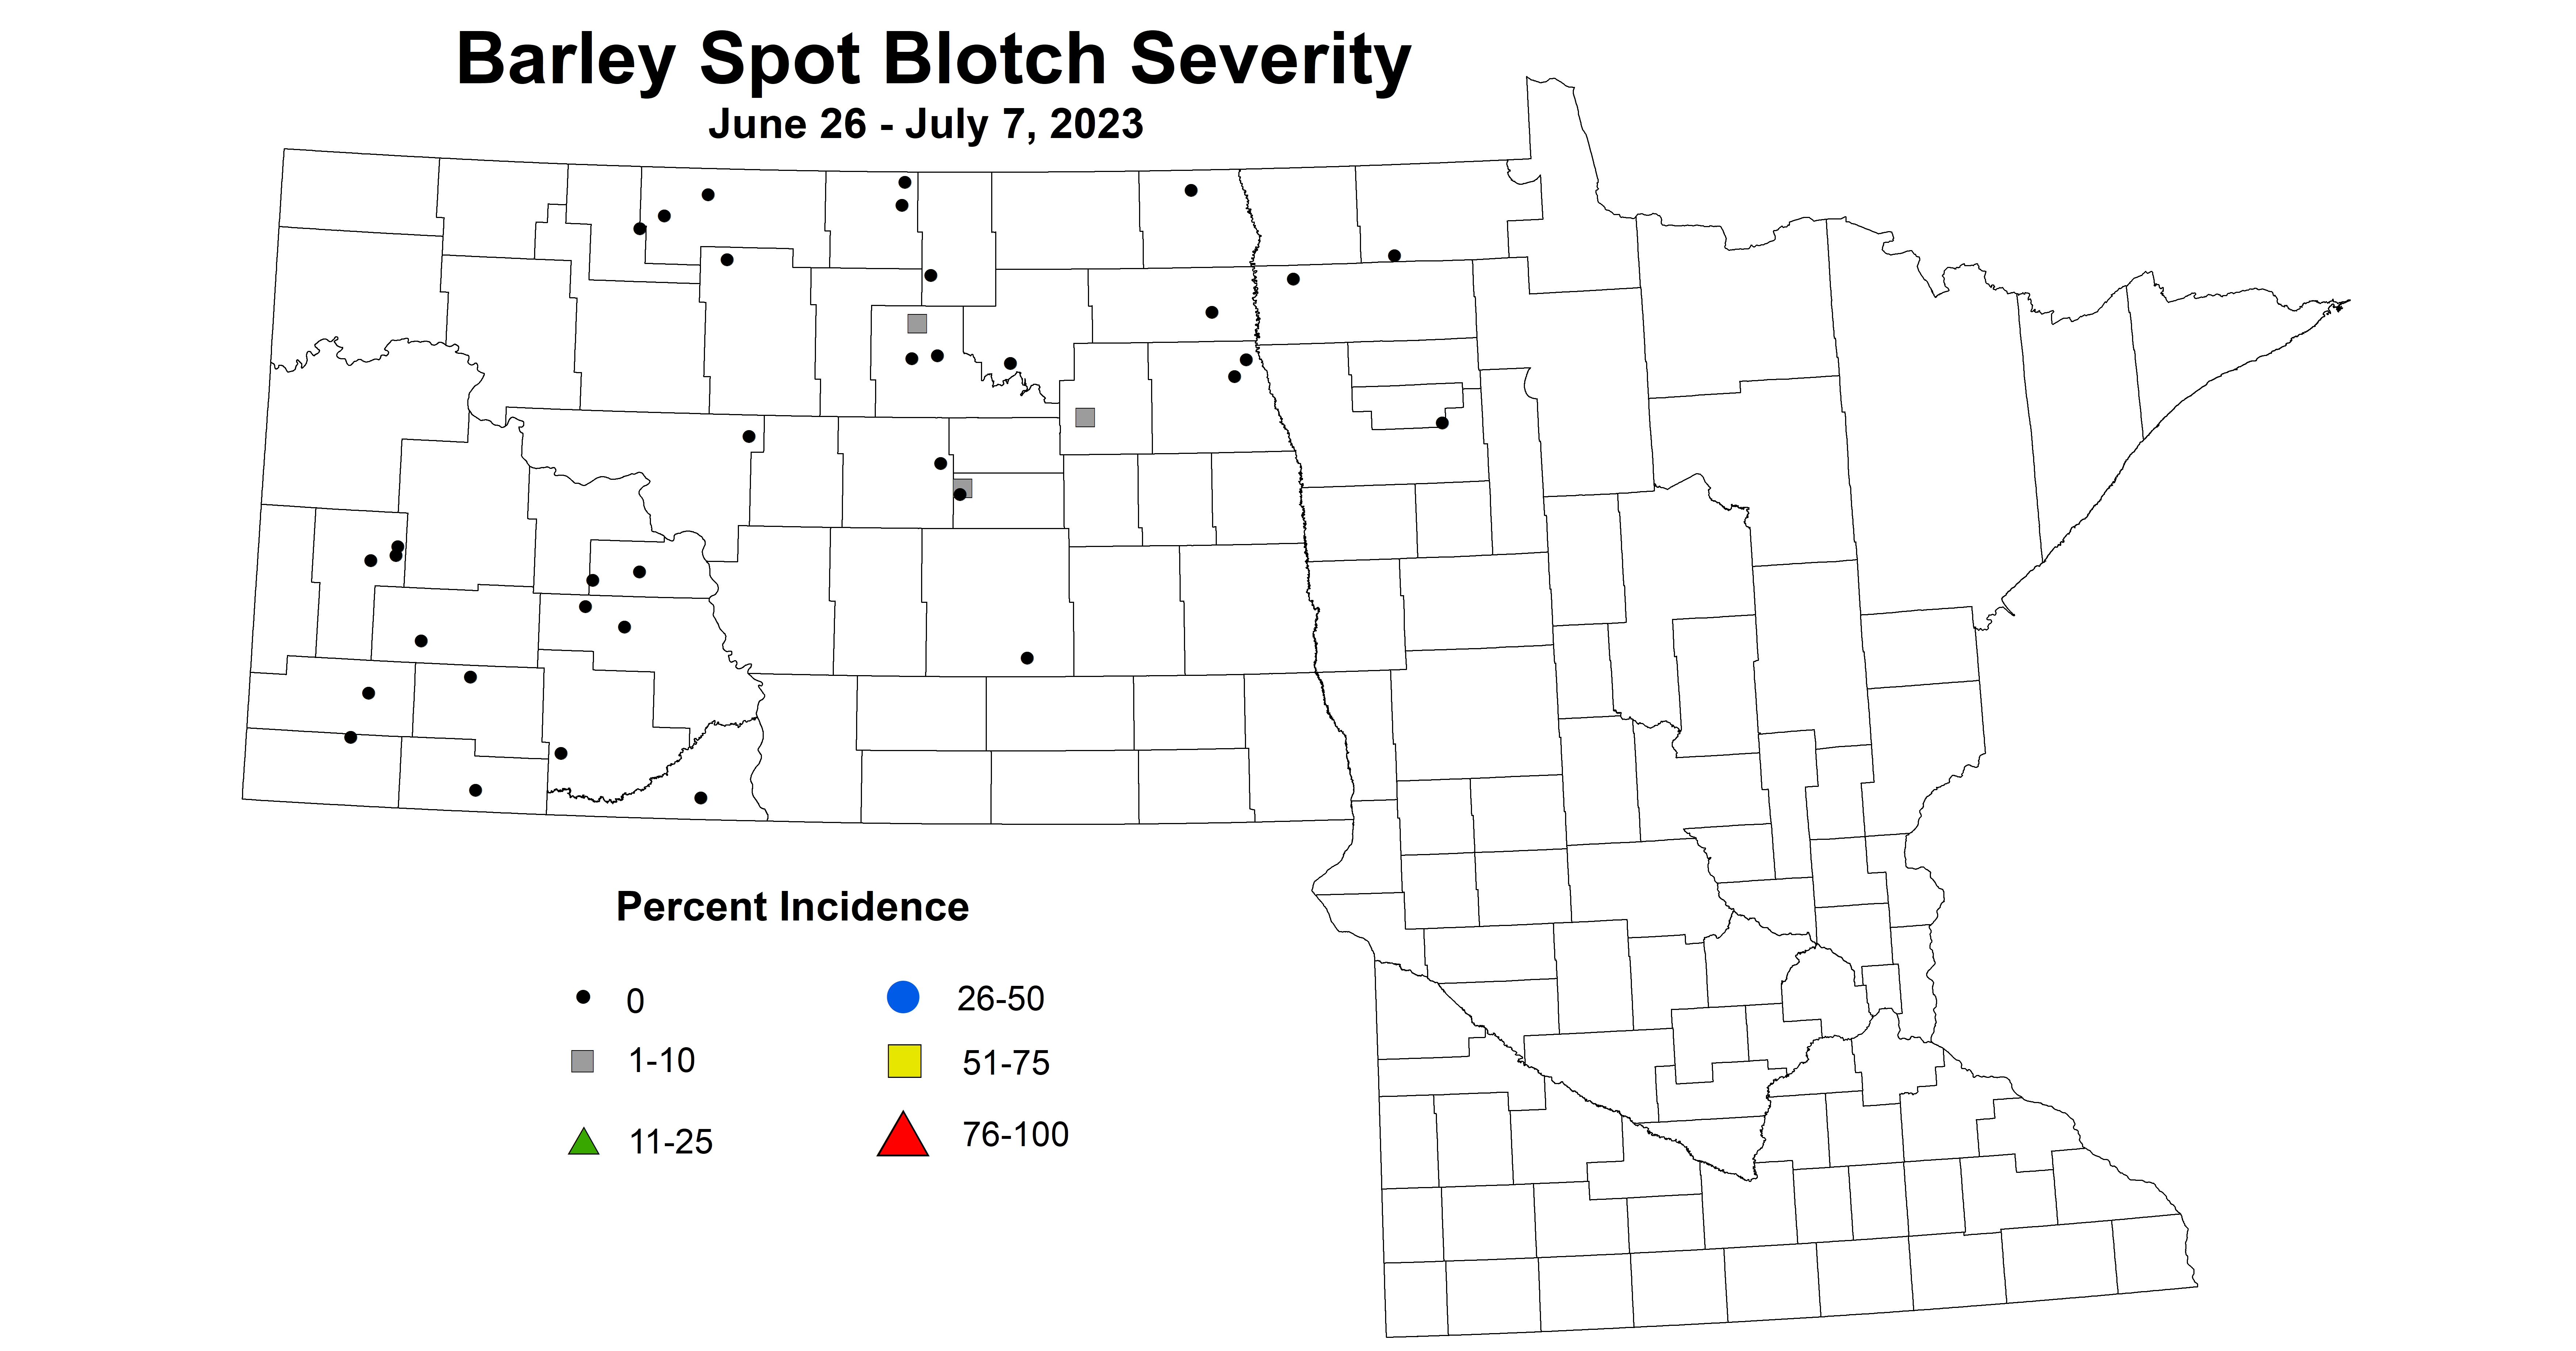 barley spot blotch severity June 26 - July 7 2023